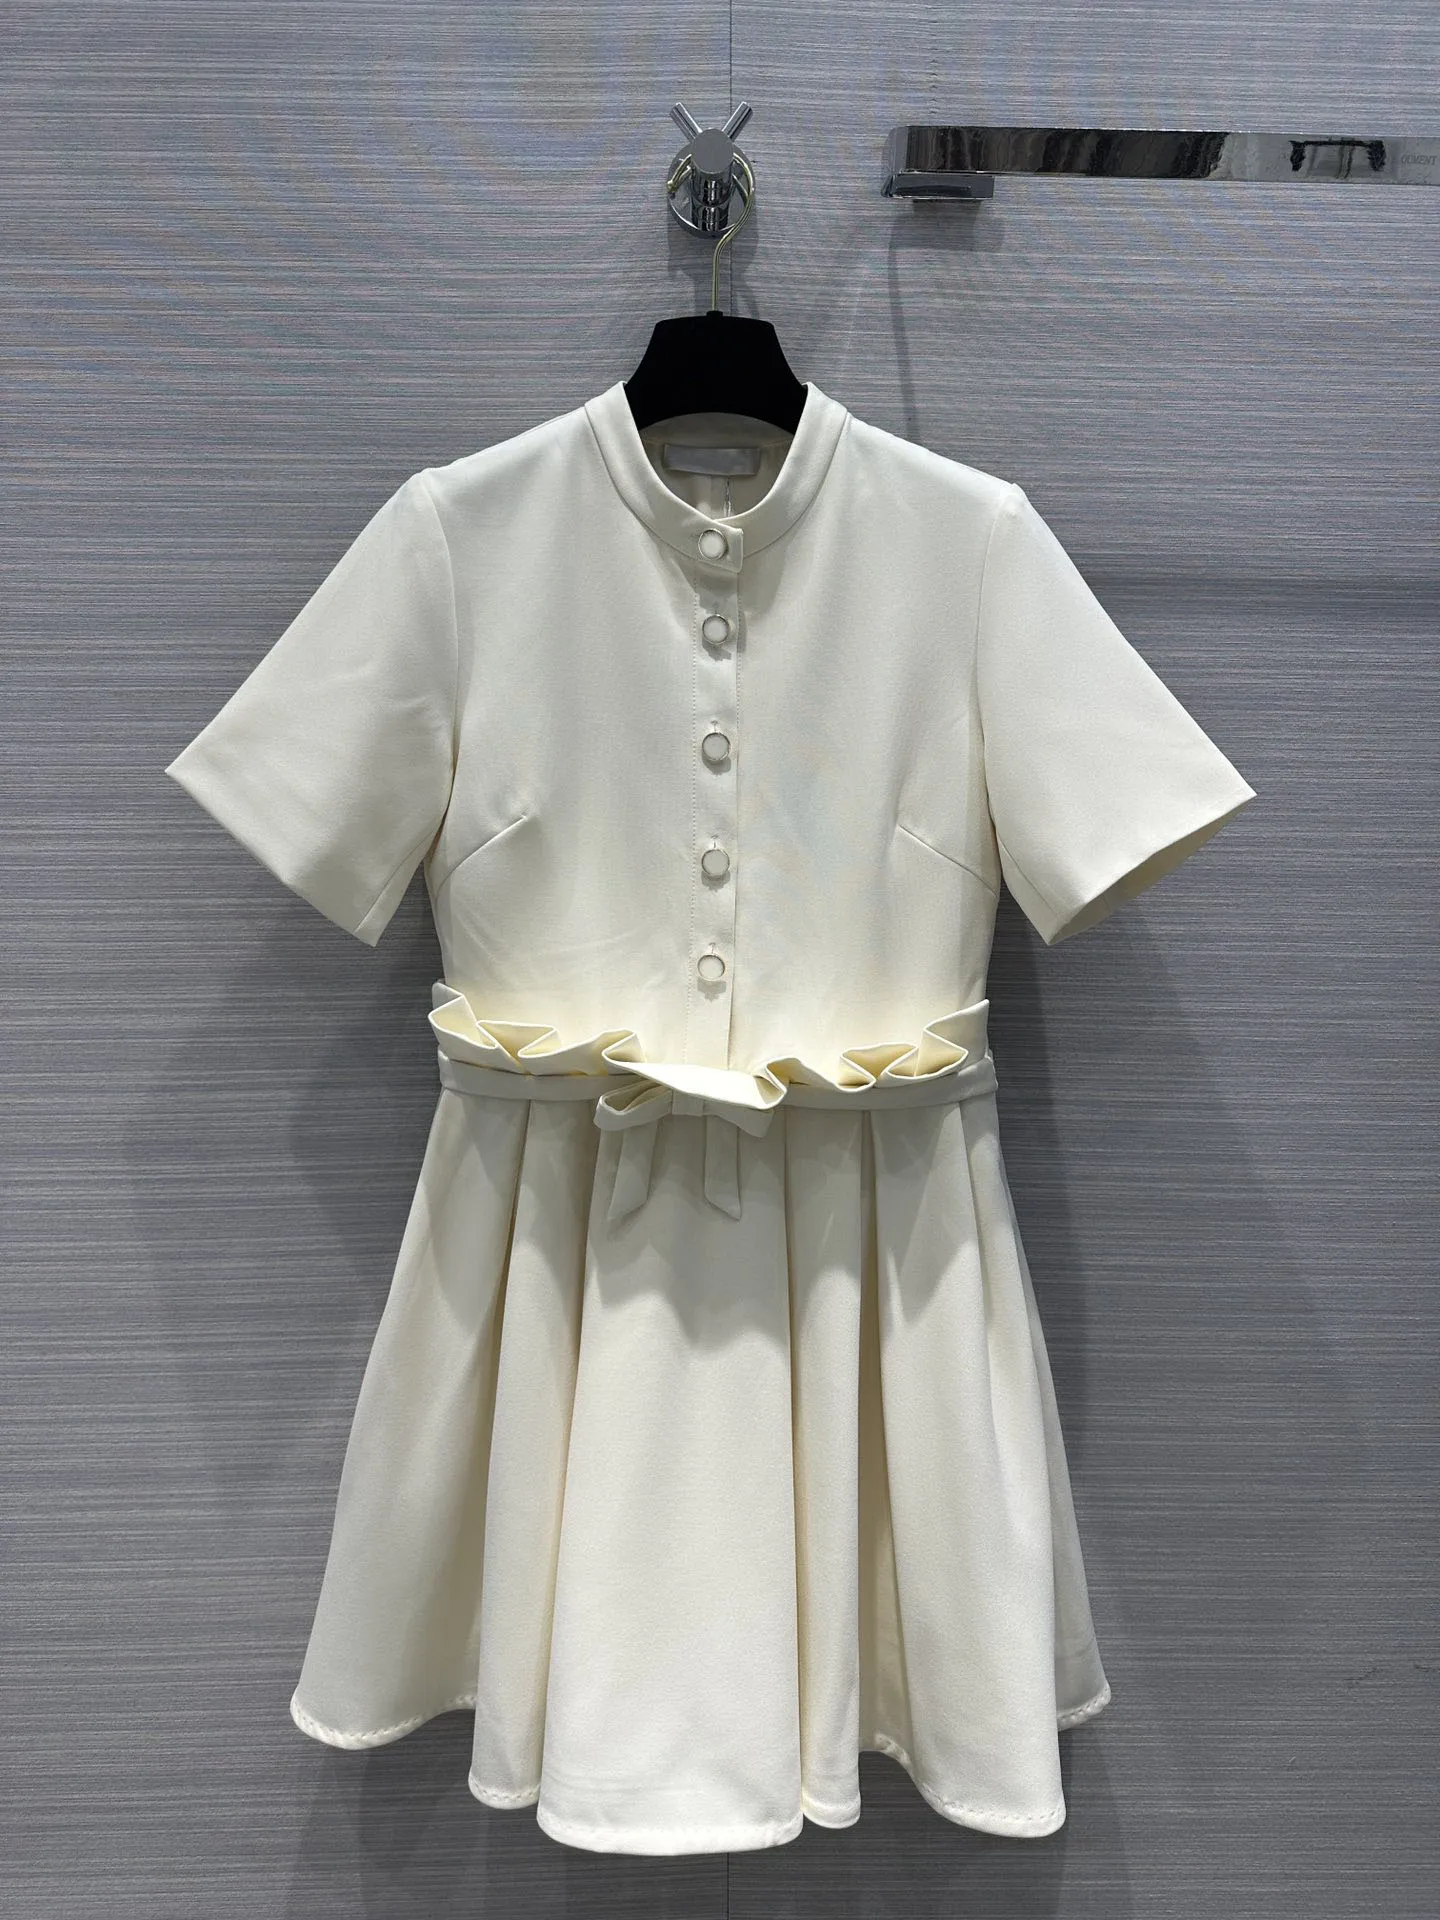 Весенне-летнее новое белое платье с оборками на талии, дизайн в складку подчеркивает тонкую талию